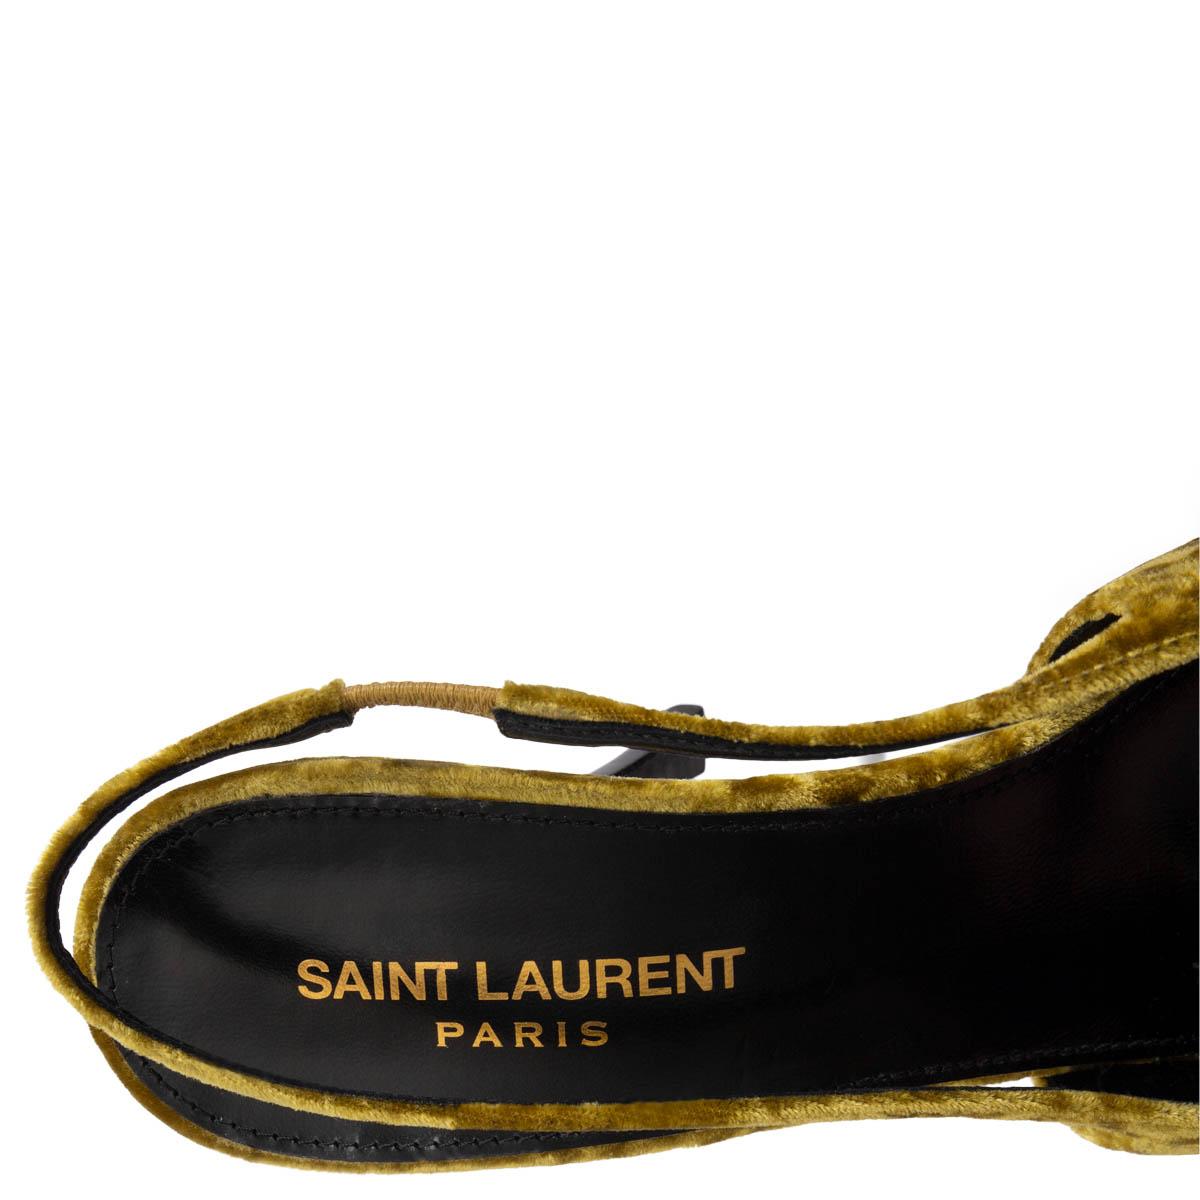 SAINT LAURENT Senape mustard BALDE VELVET Sllingbacks Pumps Shoes 38 For Sale 1